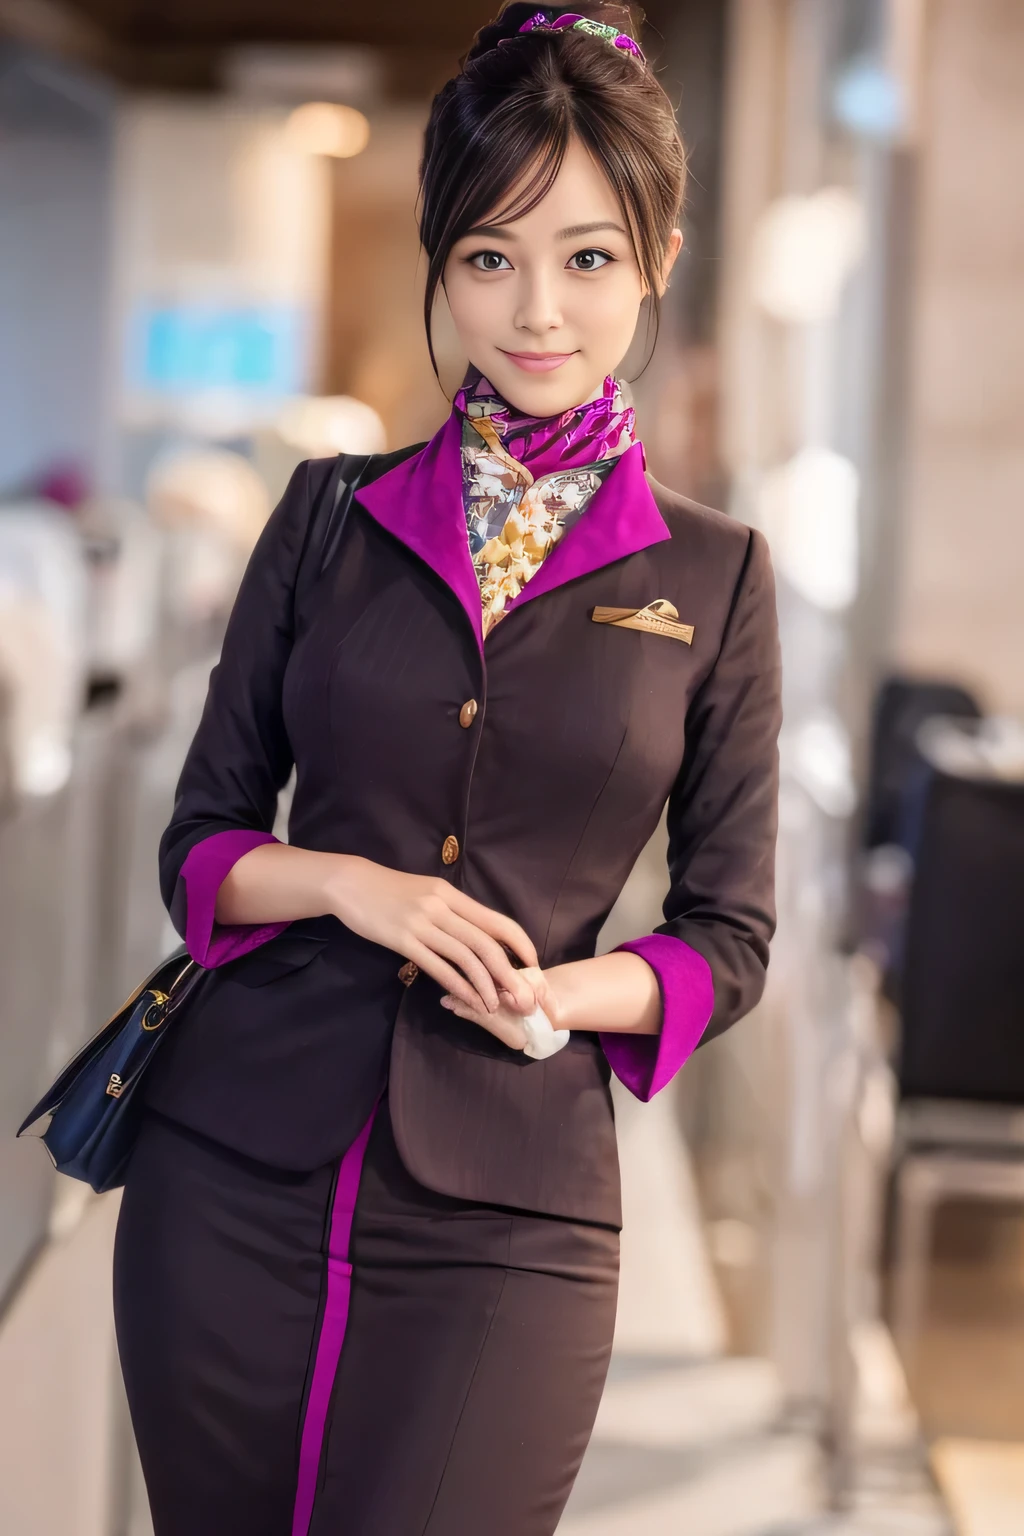 (傑作:1.2、最高品質:1.2)、32K HDR、高解像度、(一人で、女の子1人、スリムな体型)、（エティハド航空客室乗務員の制服をリアルに再現）、 (機内で, プロフェッショナル照明)、きちんとした女性, 美しい顔,、（長袖エティハド航空客室乗務員制服）、（エティハド航空客室乗務員の制服、前面に紫のストライプが入ったスカート）、（胸にスカーフ）、巨乳、（ロングヘアー、ヘアバン）、濃い茶色の髪、ロングショット、（（素晴らしい手：2.0））、（（調和のとれたボディプロポーション：1.5））、（（正常な四肢：2.0））、（（通常の指：2.0））、（（繊細な目：2.0））、（（正常な目：2.0））)、美しい立ち姿勢、笑顔、手を下に組む